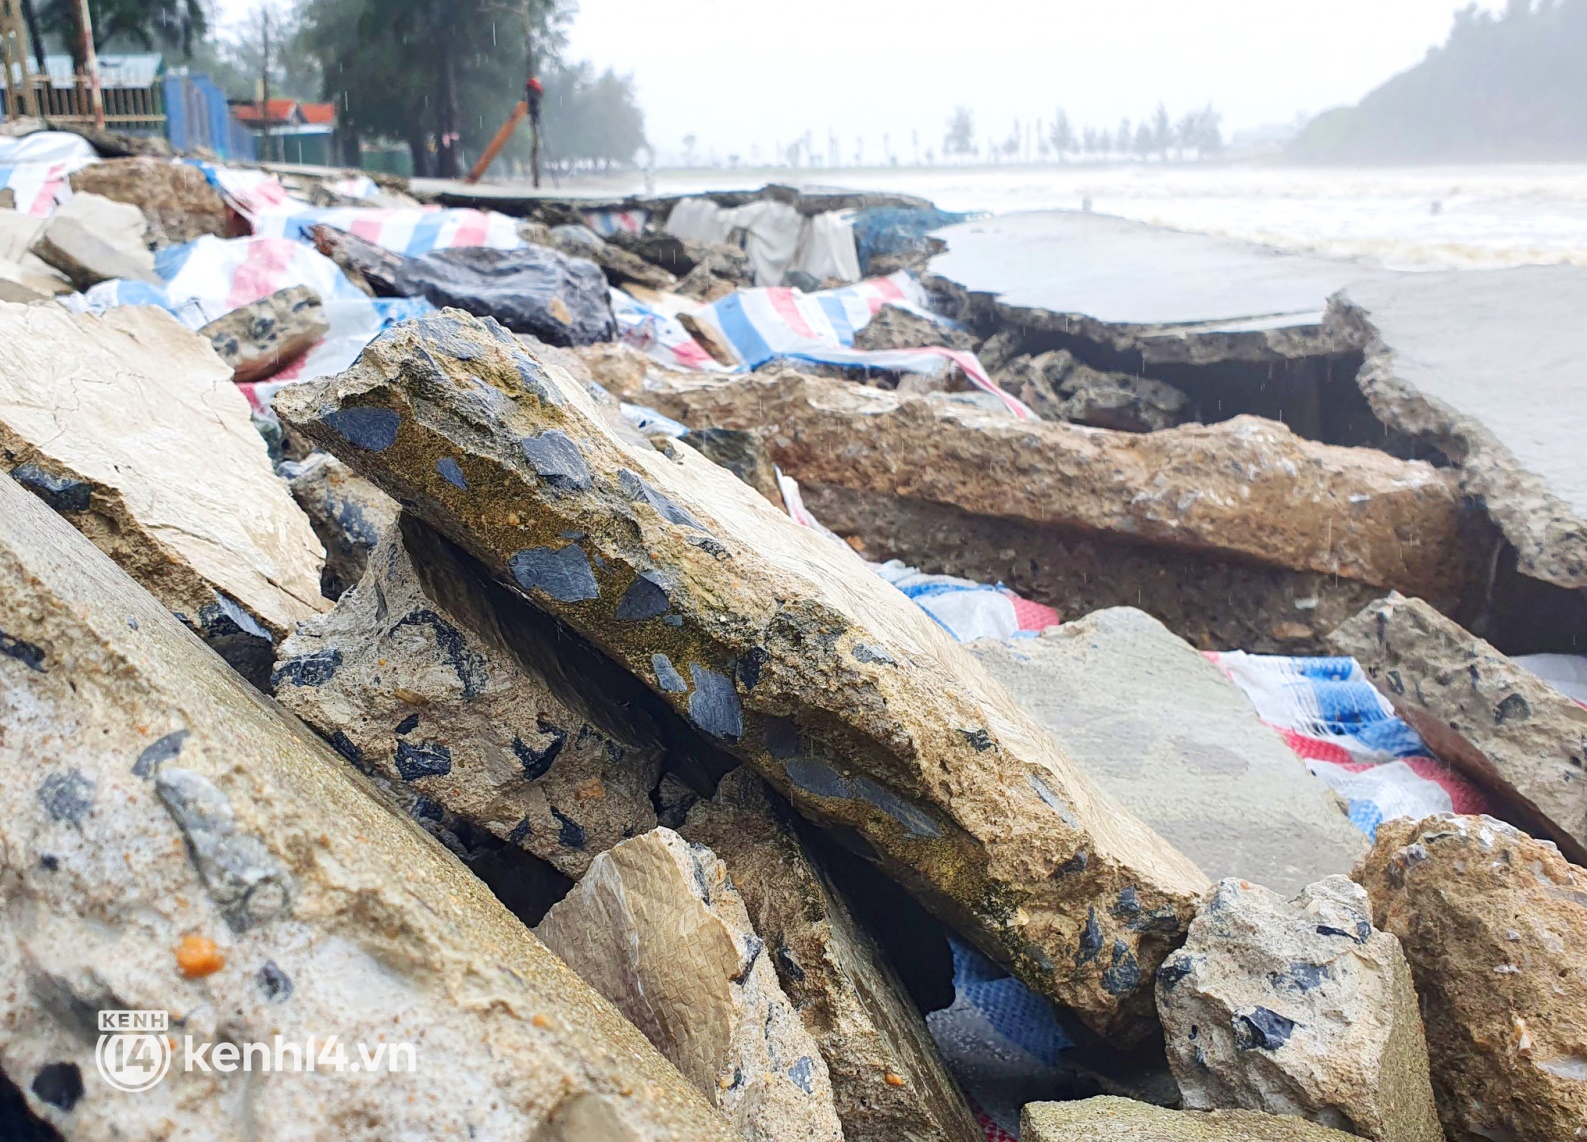 Cận cảnh kè biển tiền tỷ ở Nghệ An bị sóng đánh vỡ nát sau bão - Ảnh 6.